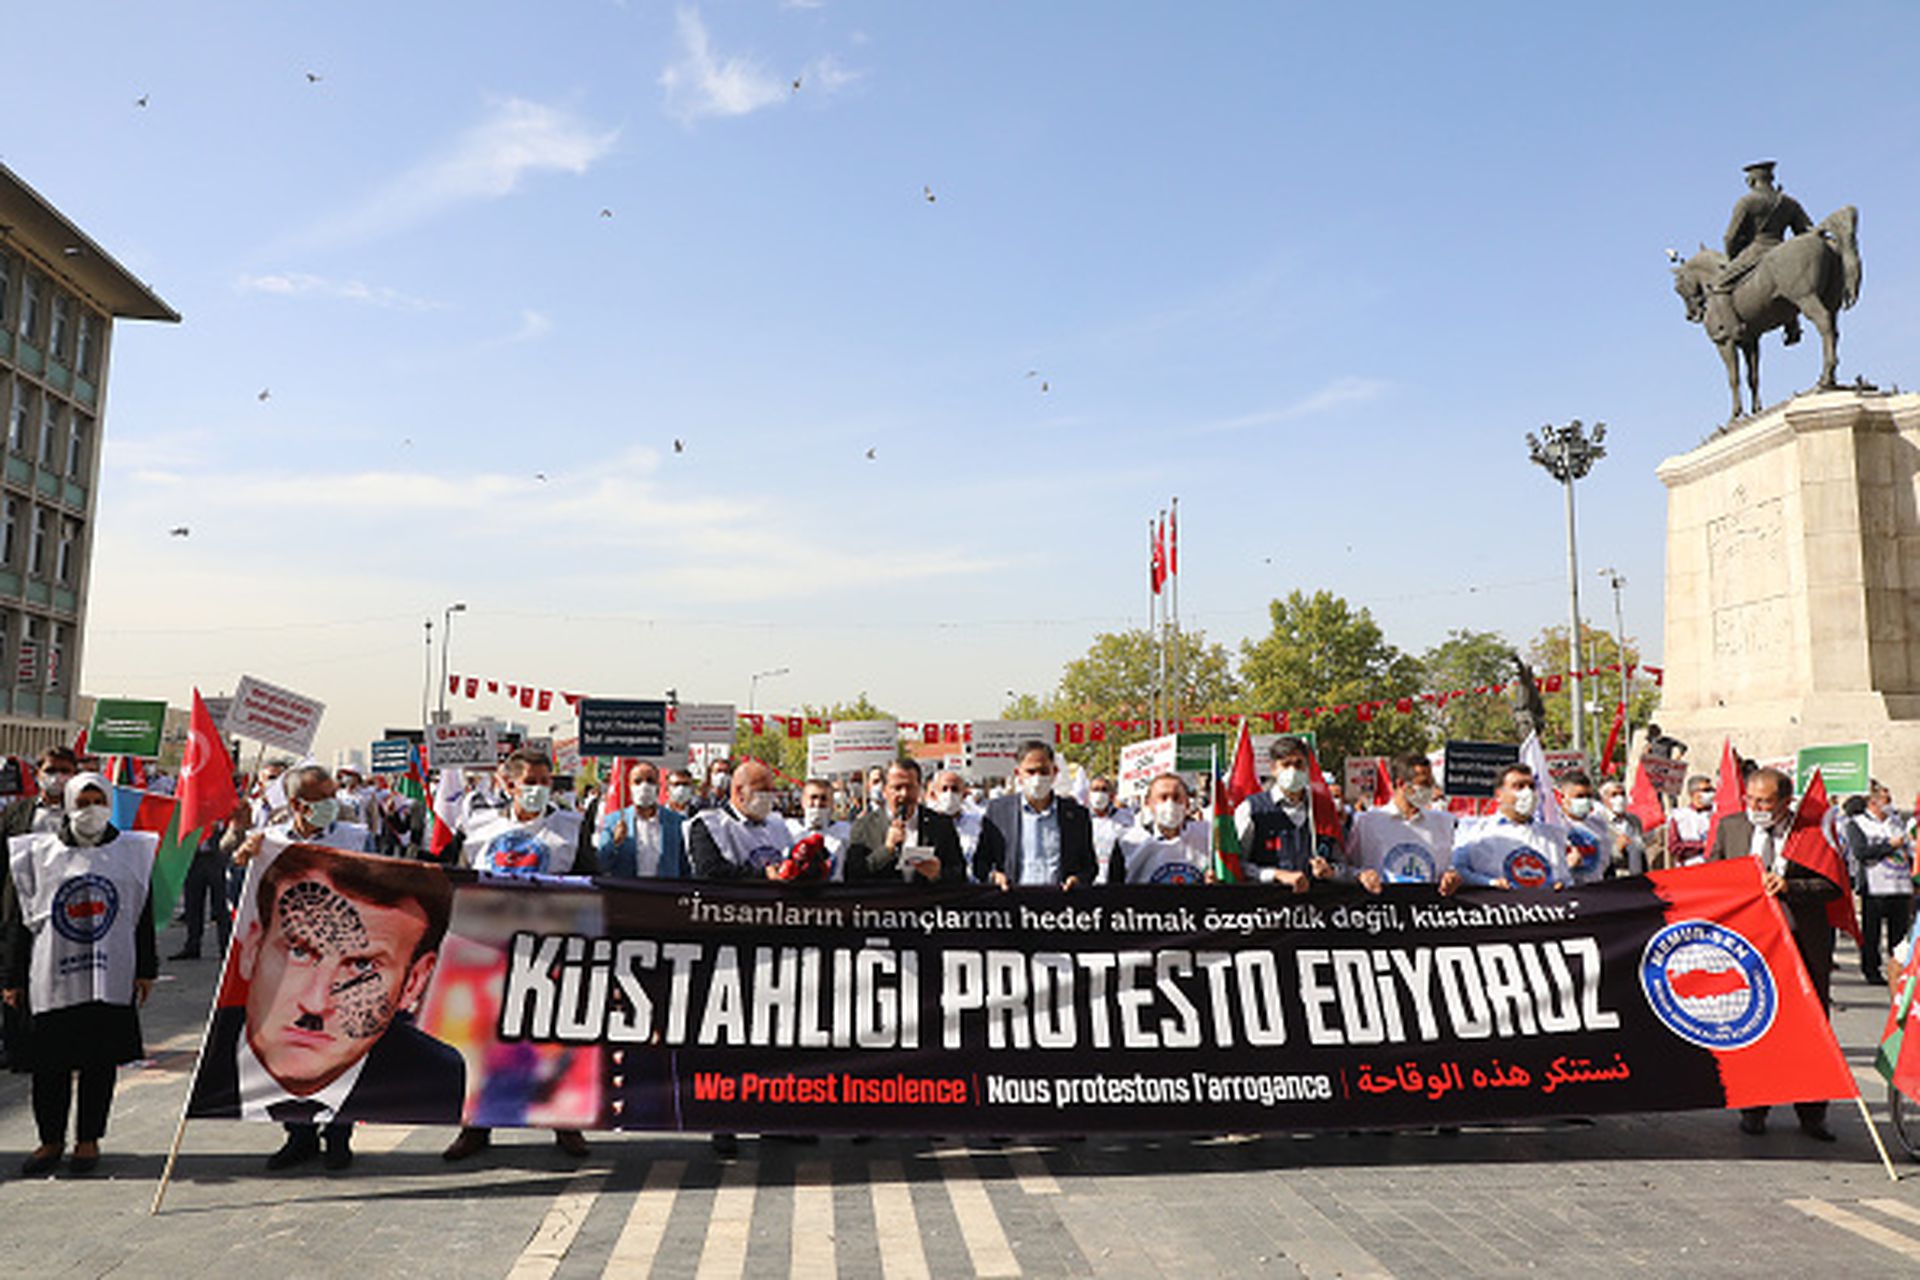 2020年10月27日，土耳其民众在安卡拉举行示威游行，强烈抗议法国总统马克龙（Emmanuel Macron）对伊斯兰教及穆斯林的“轻蔑言行”，横幅中马克龙本人的头像被打上了鞋印。（Getty Images）